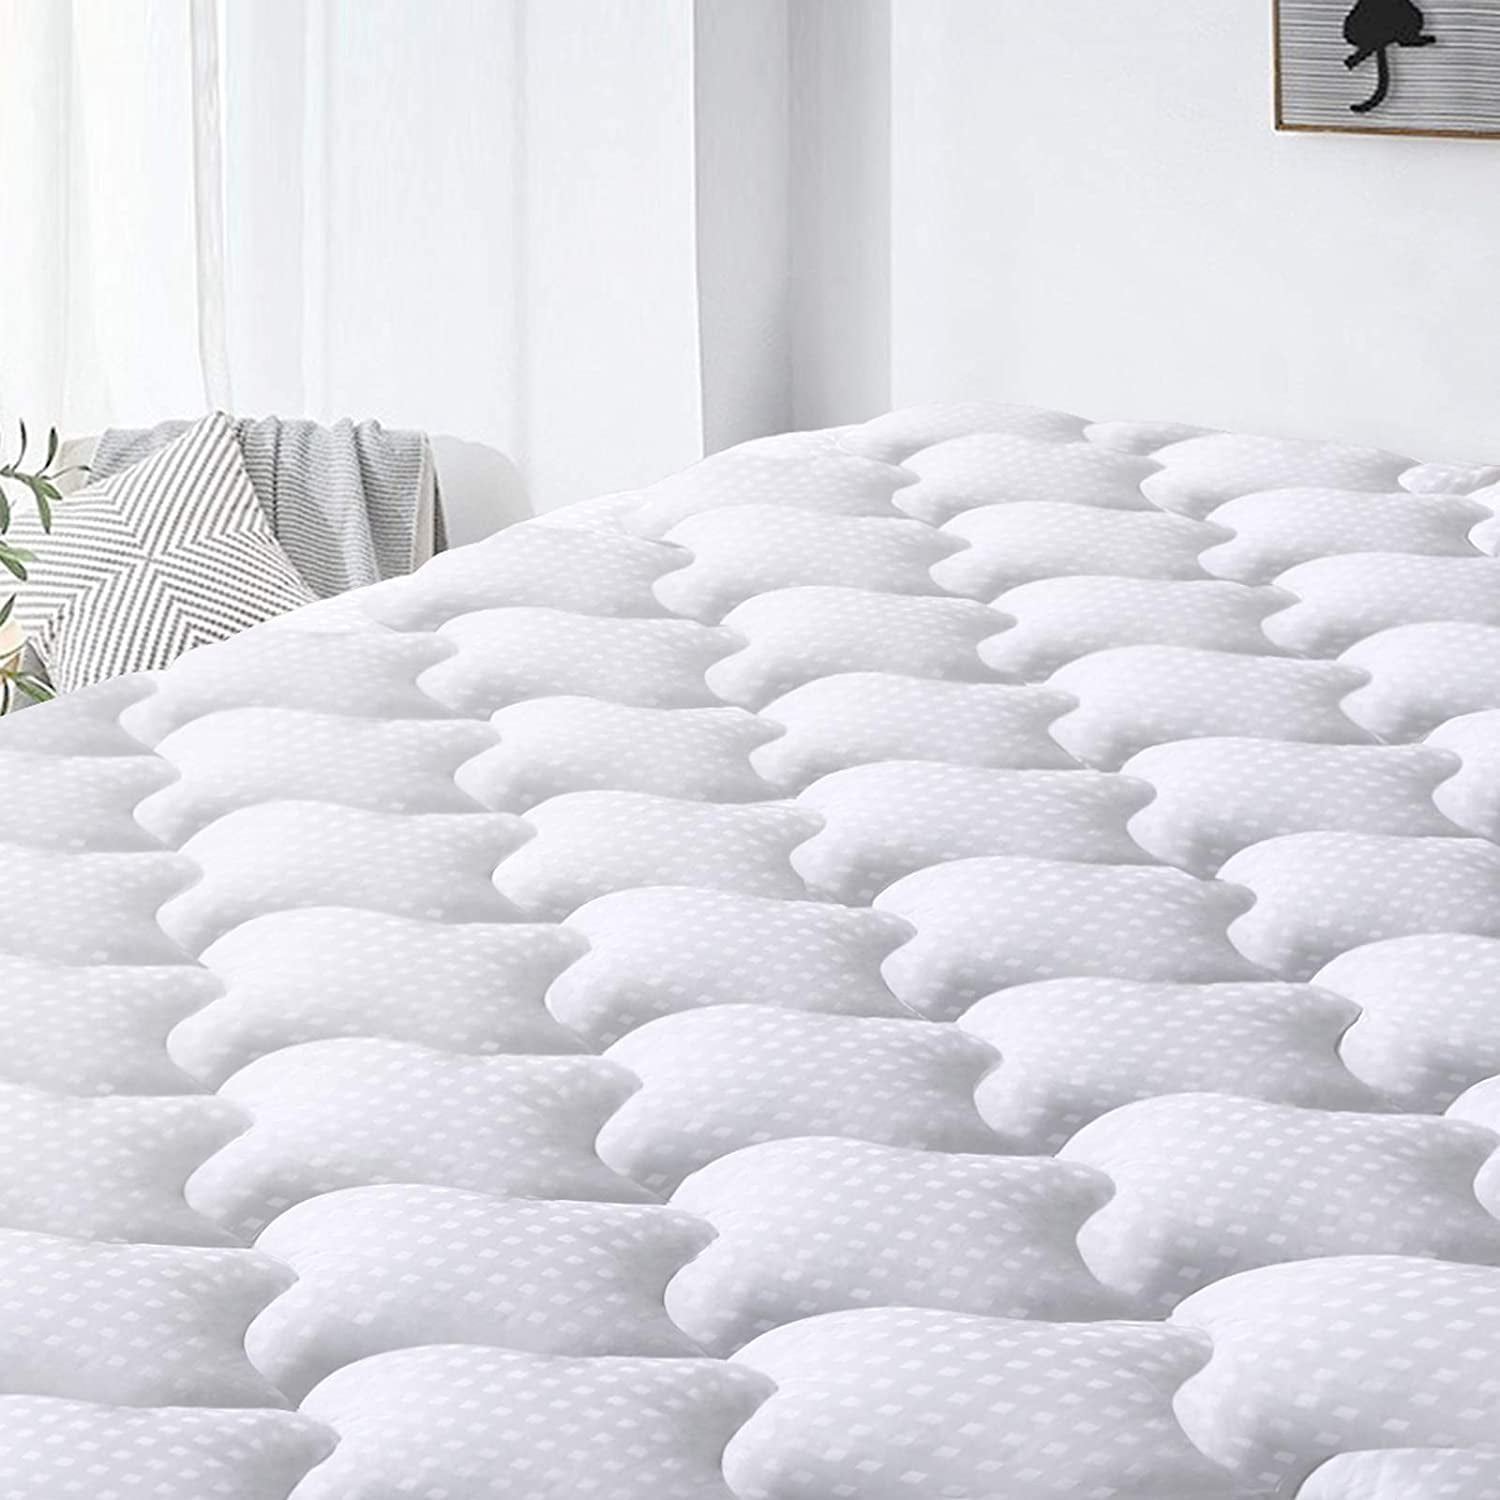 Easeland Mattress Pad Queen Size Cooling Mattress Cover Pillow Top 100